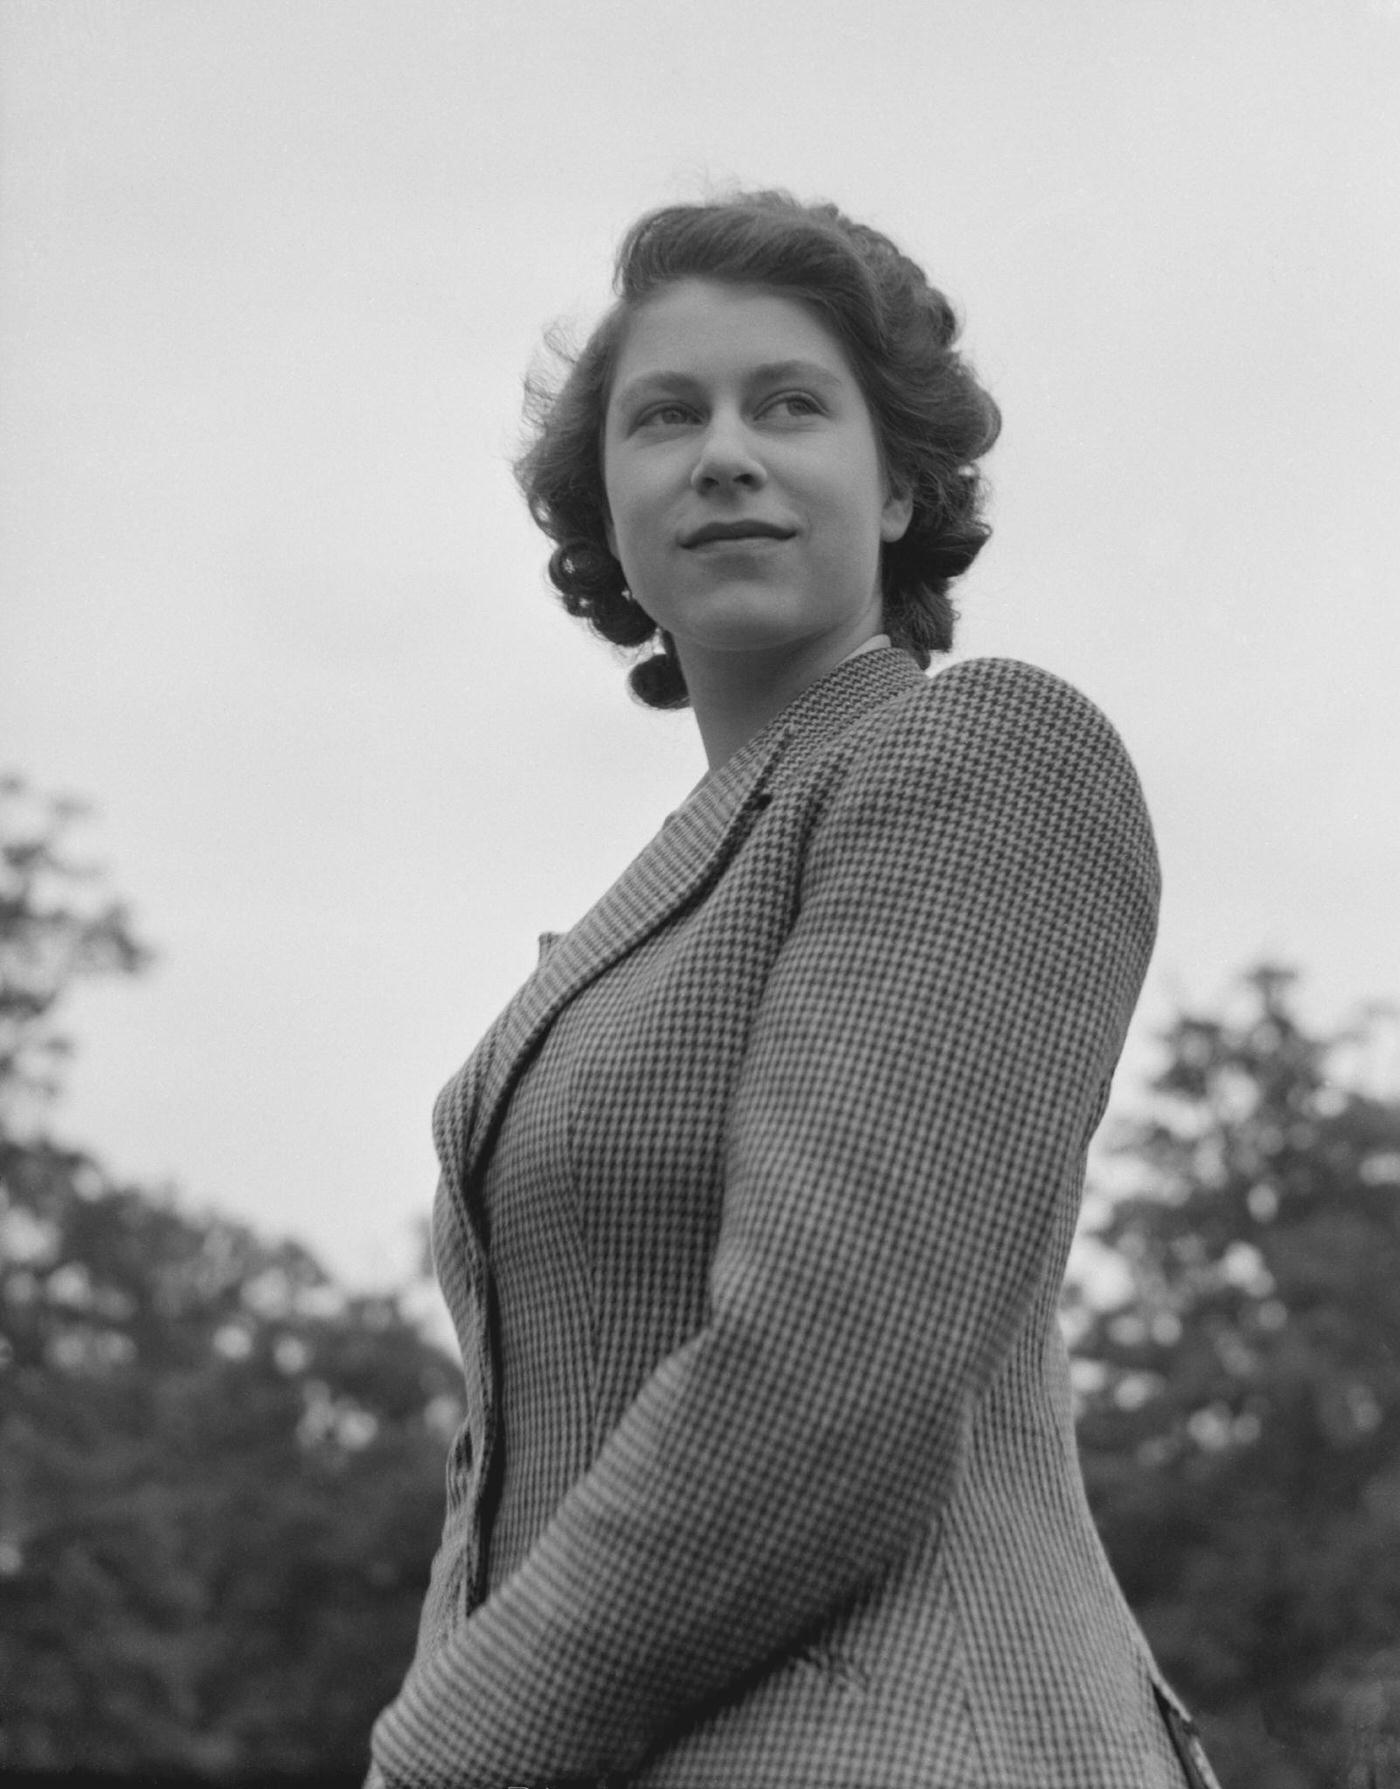 Queen Elizabeth II wearing riding gear, 1942.